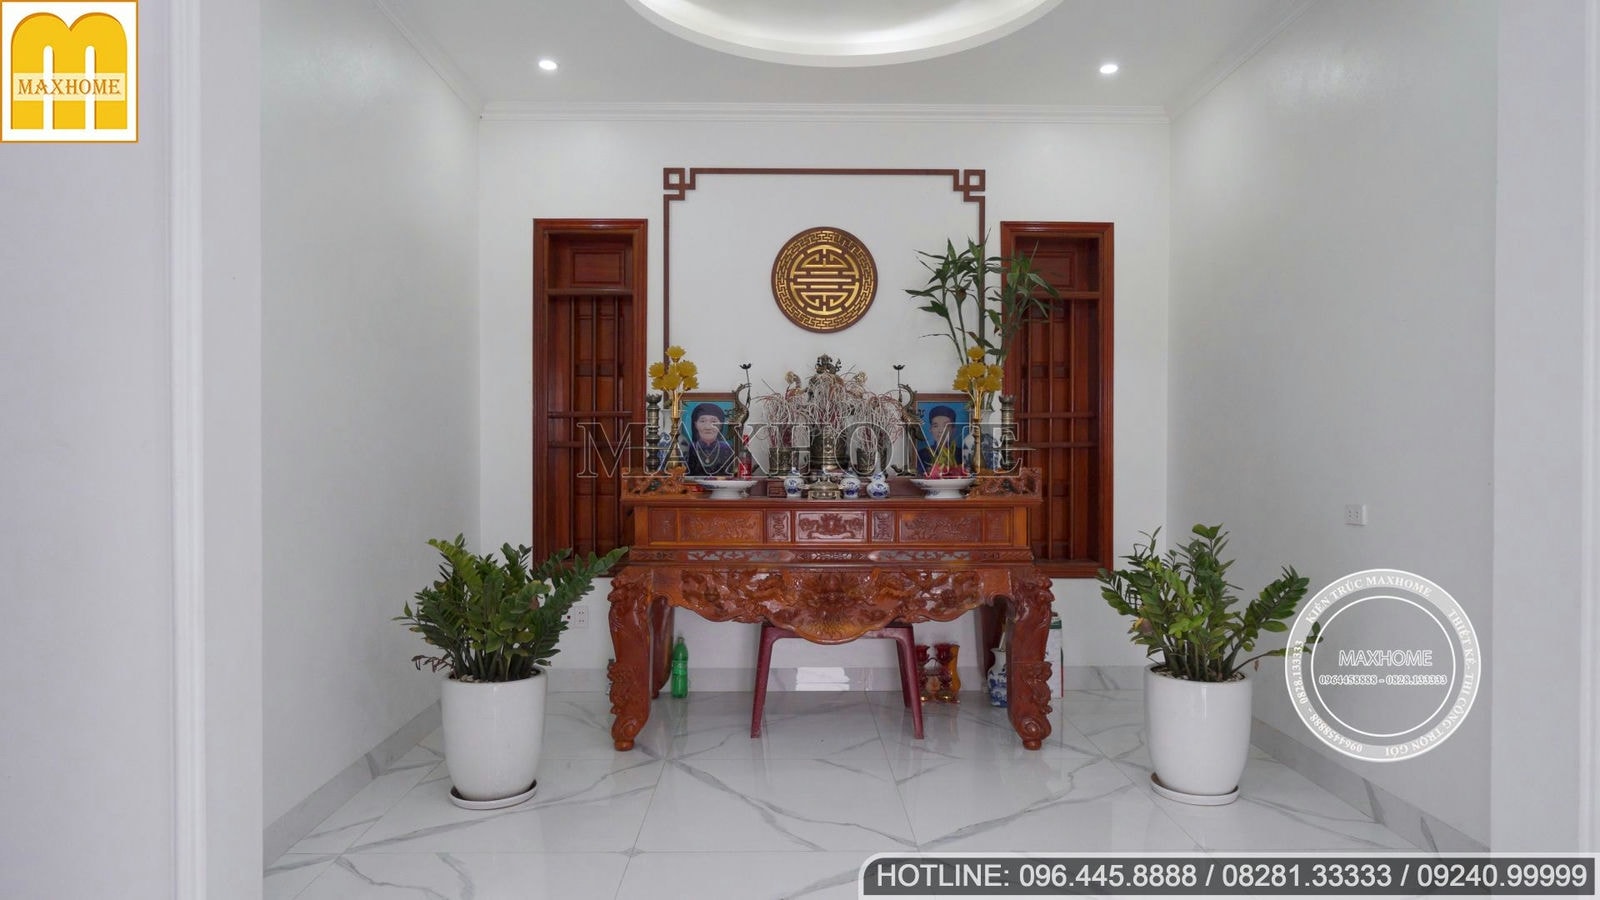 Trọn bộ nội thất giá rẻ và đẹp cho căn biệt thự hiện đại | MH01708